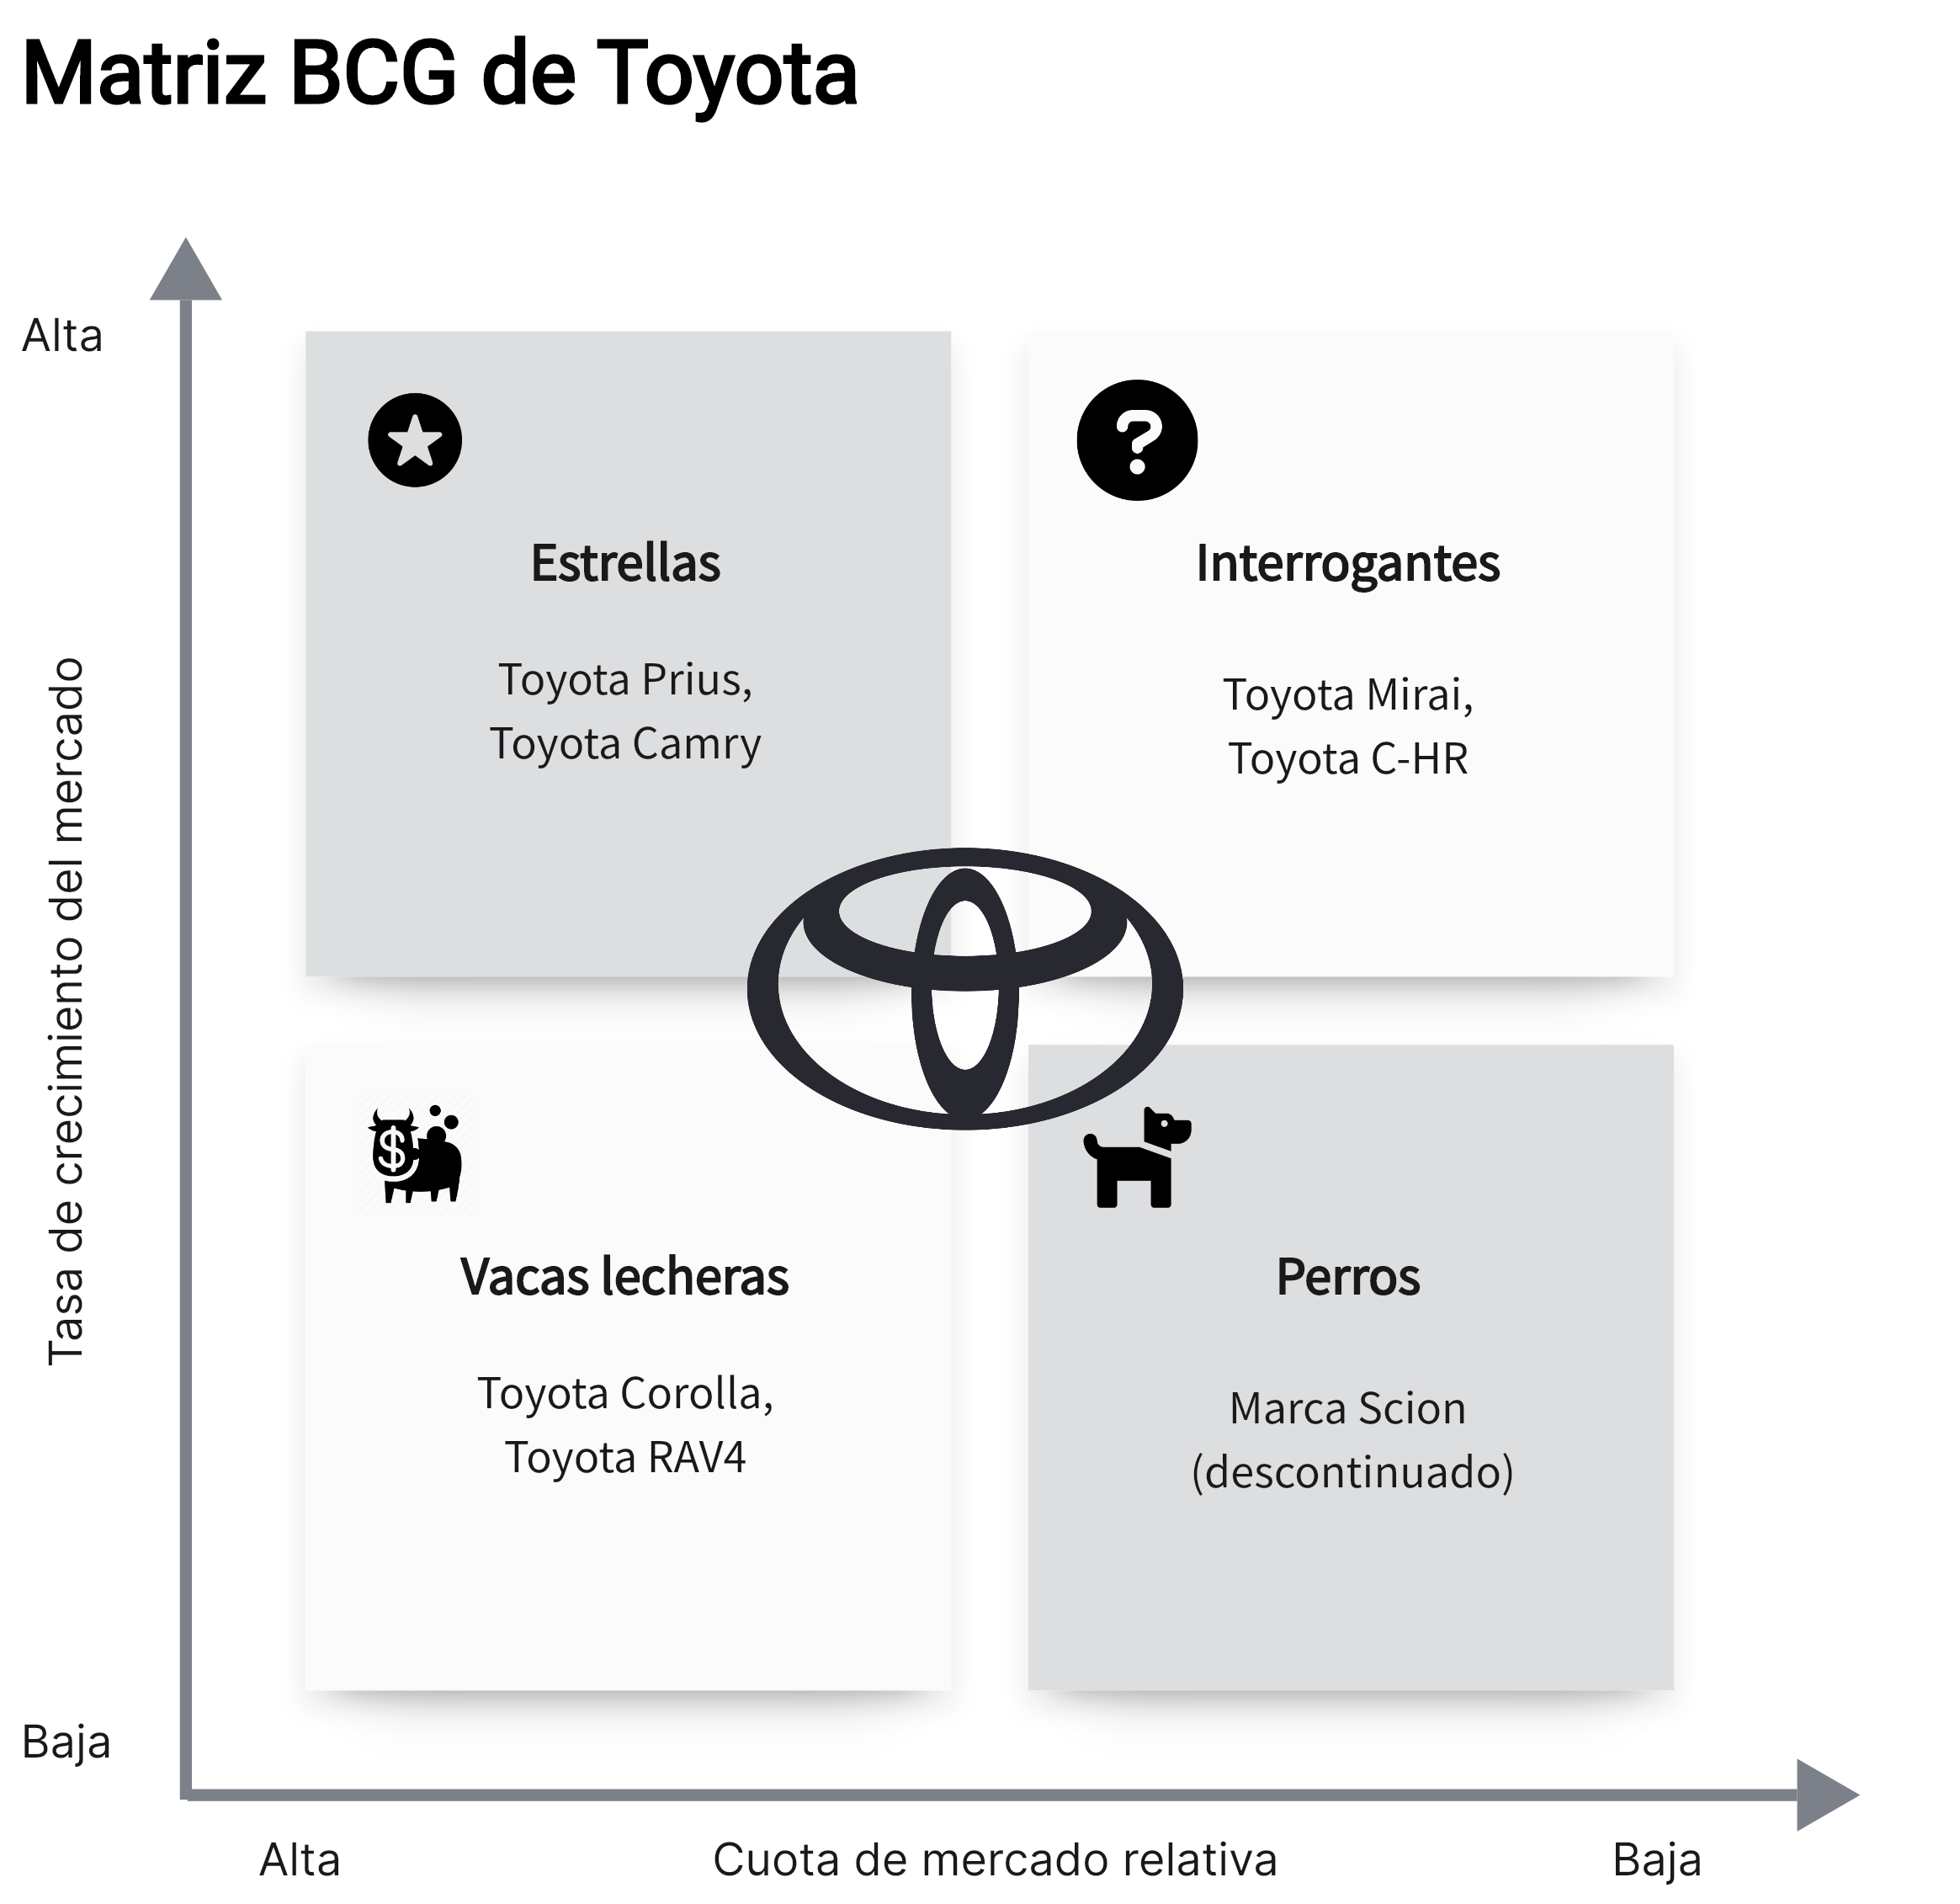 Matriz BCG de Toyota